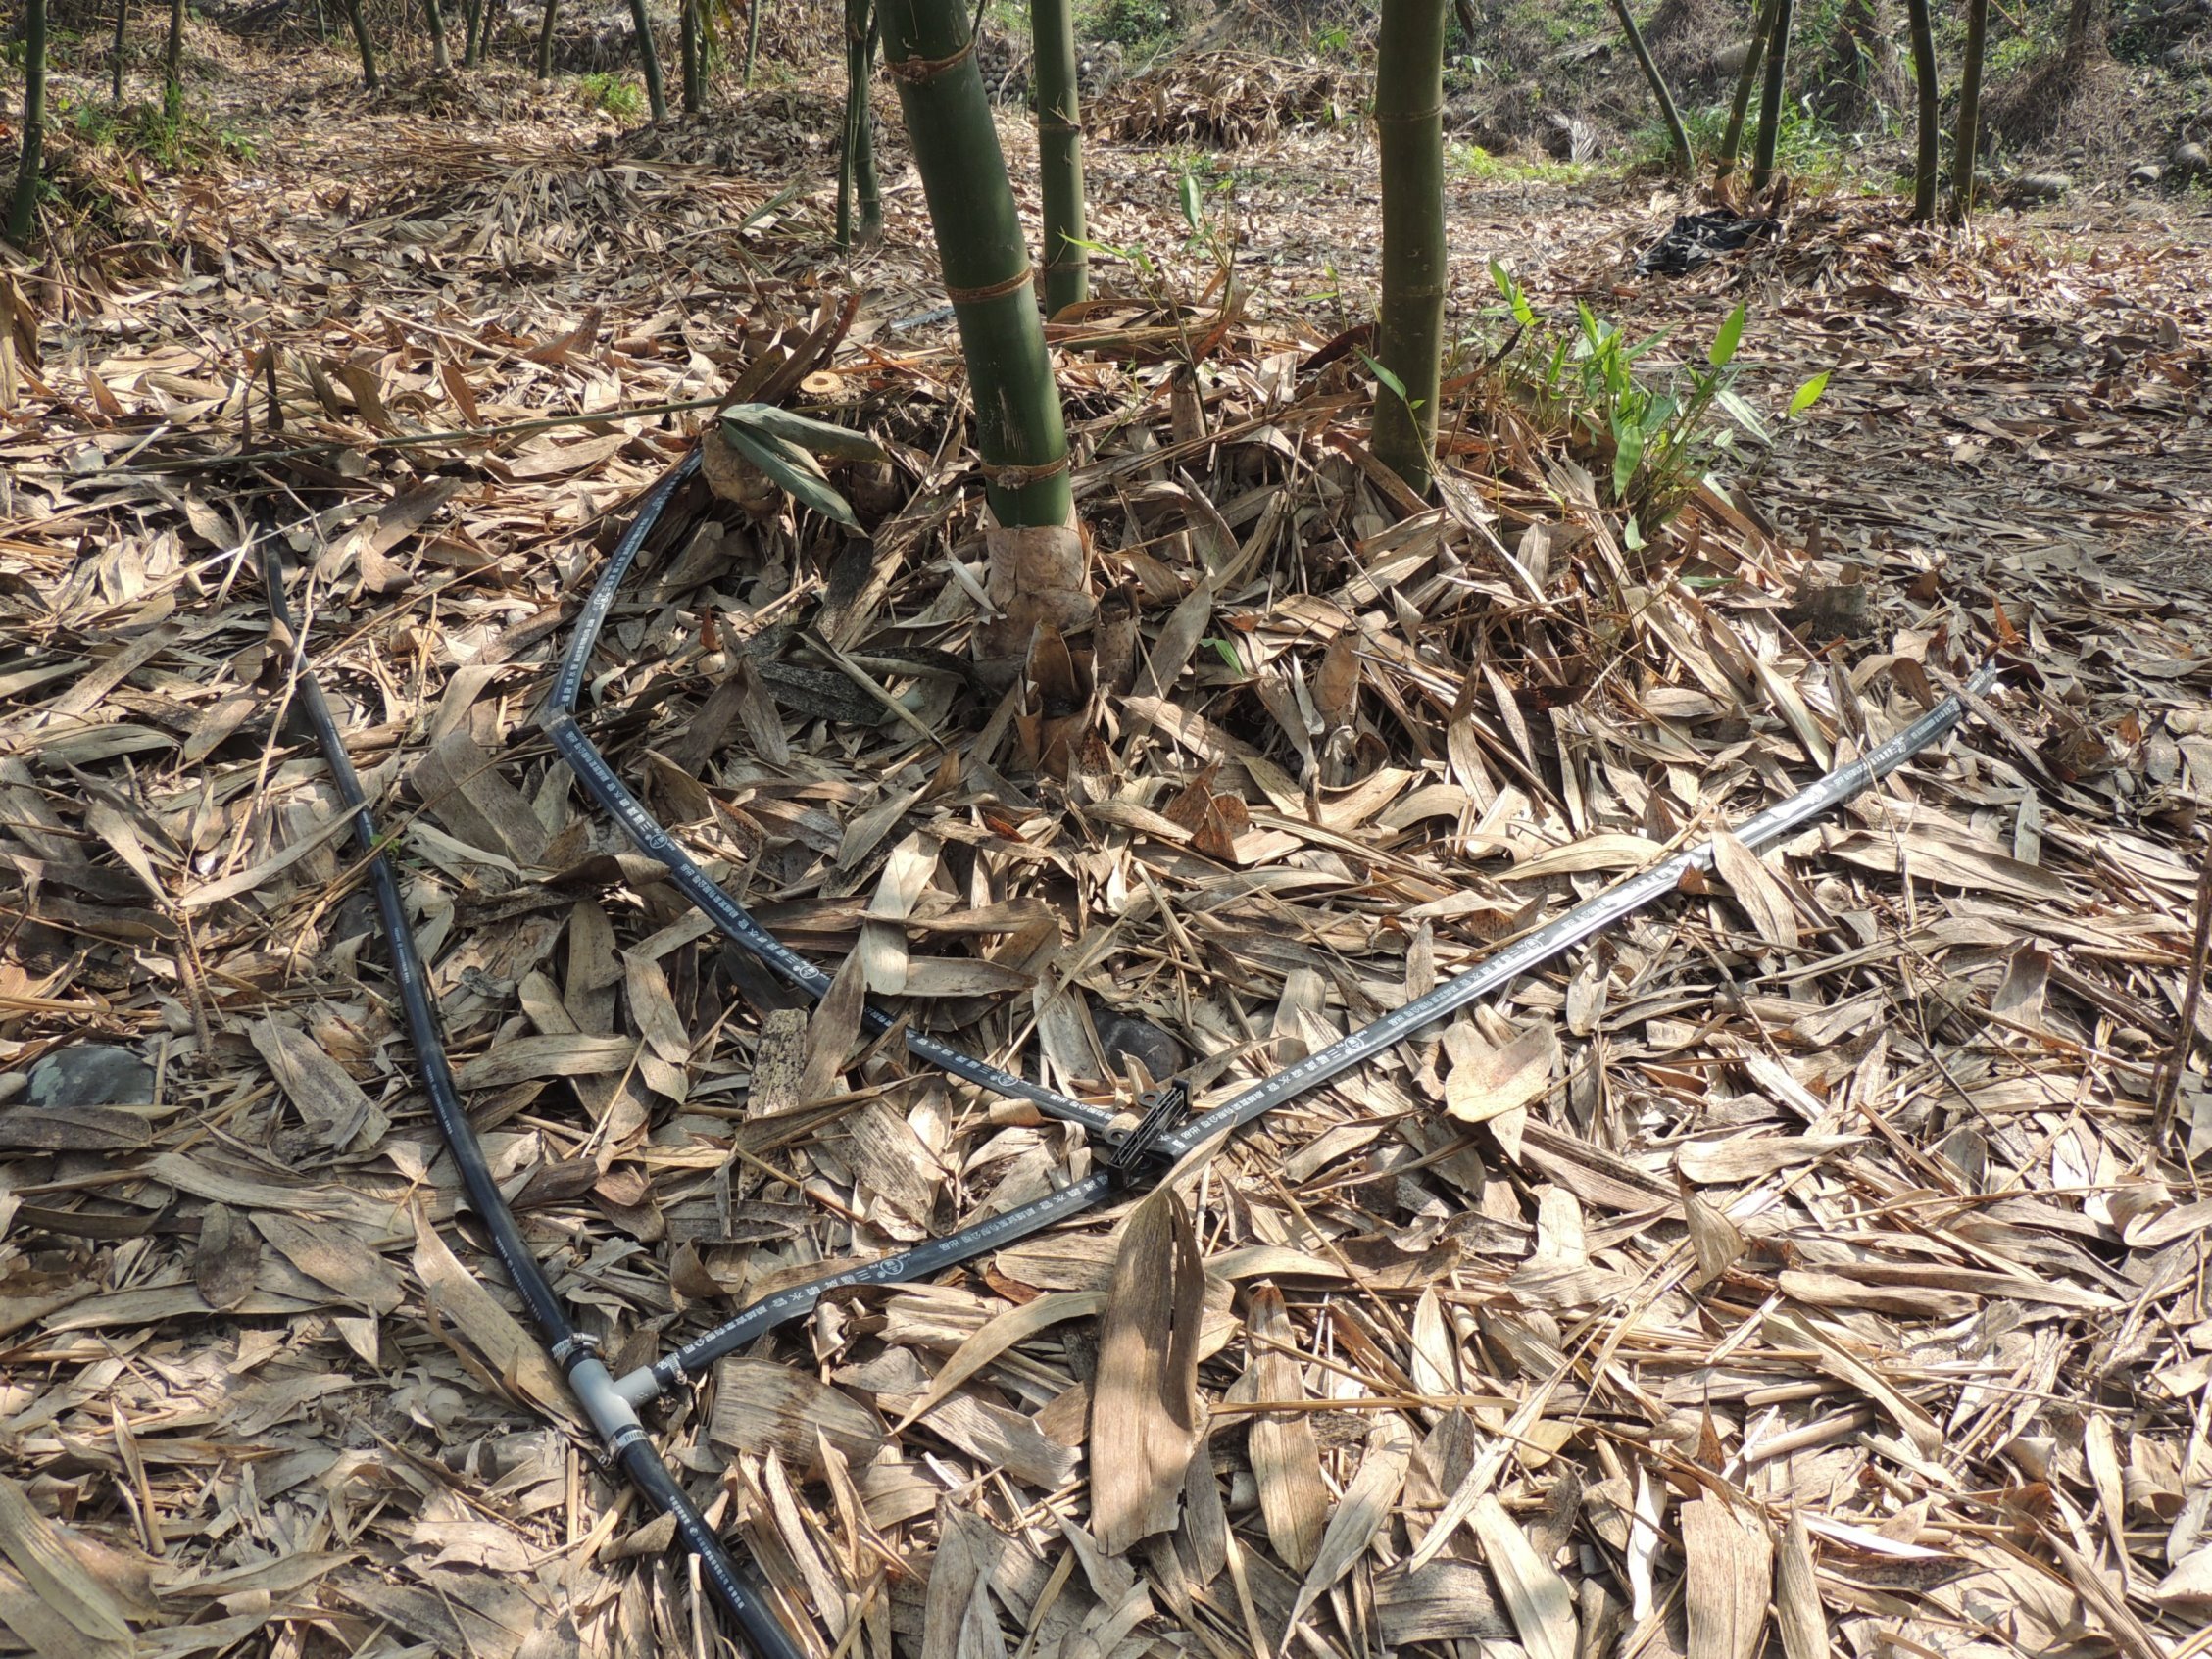 麻竹園透過節水灌溉管道進行降低灌溉用水量，於旱季實現灌溉措施，確保竹叢生長。